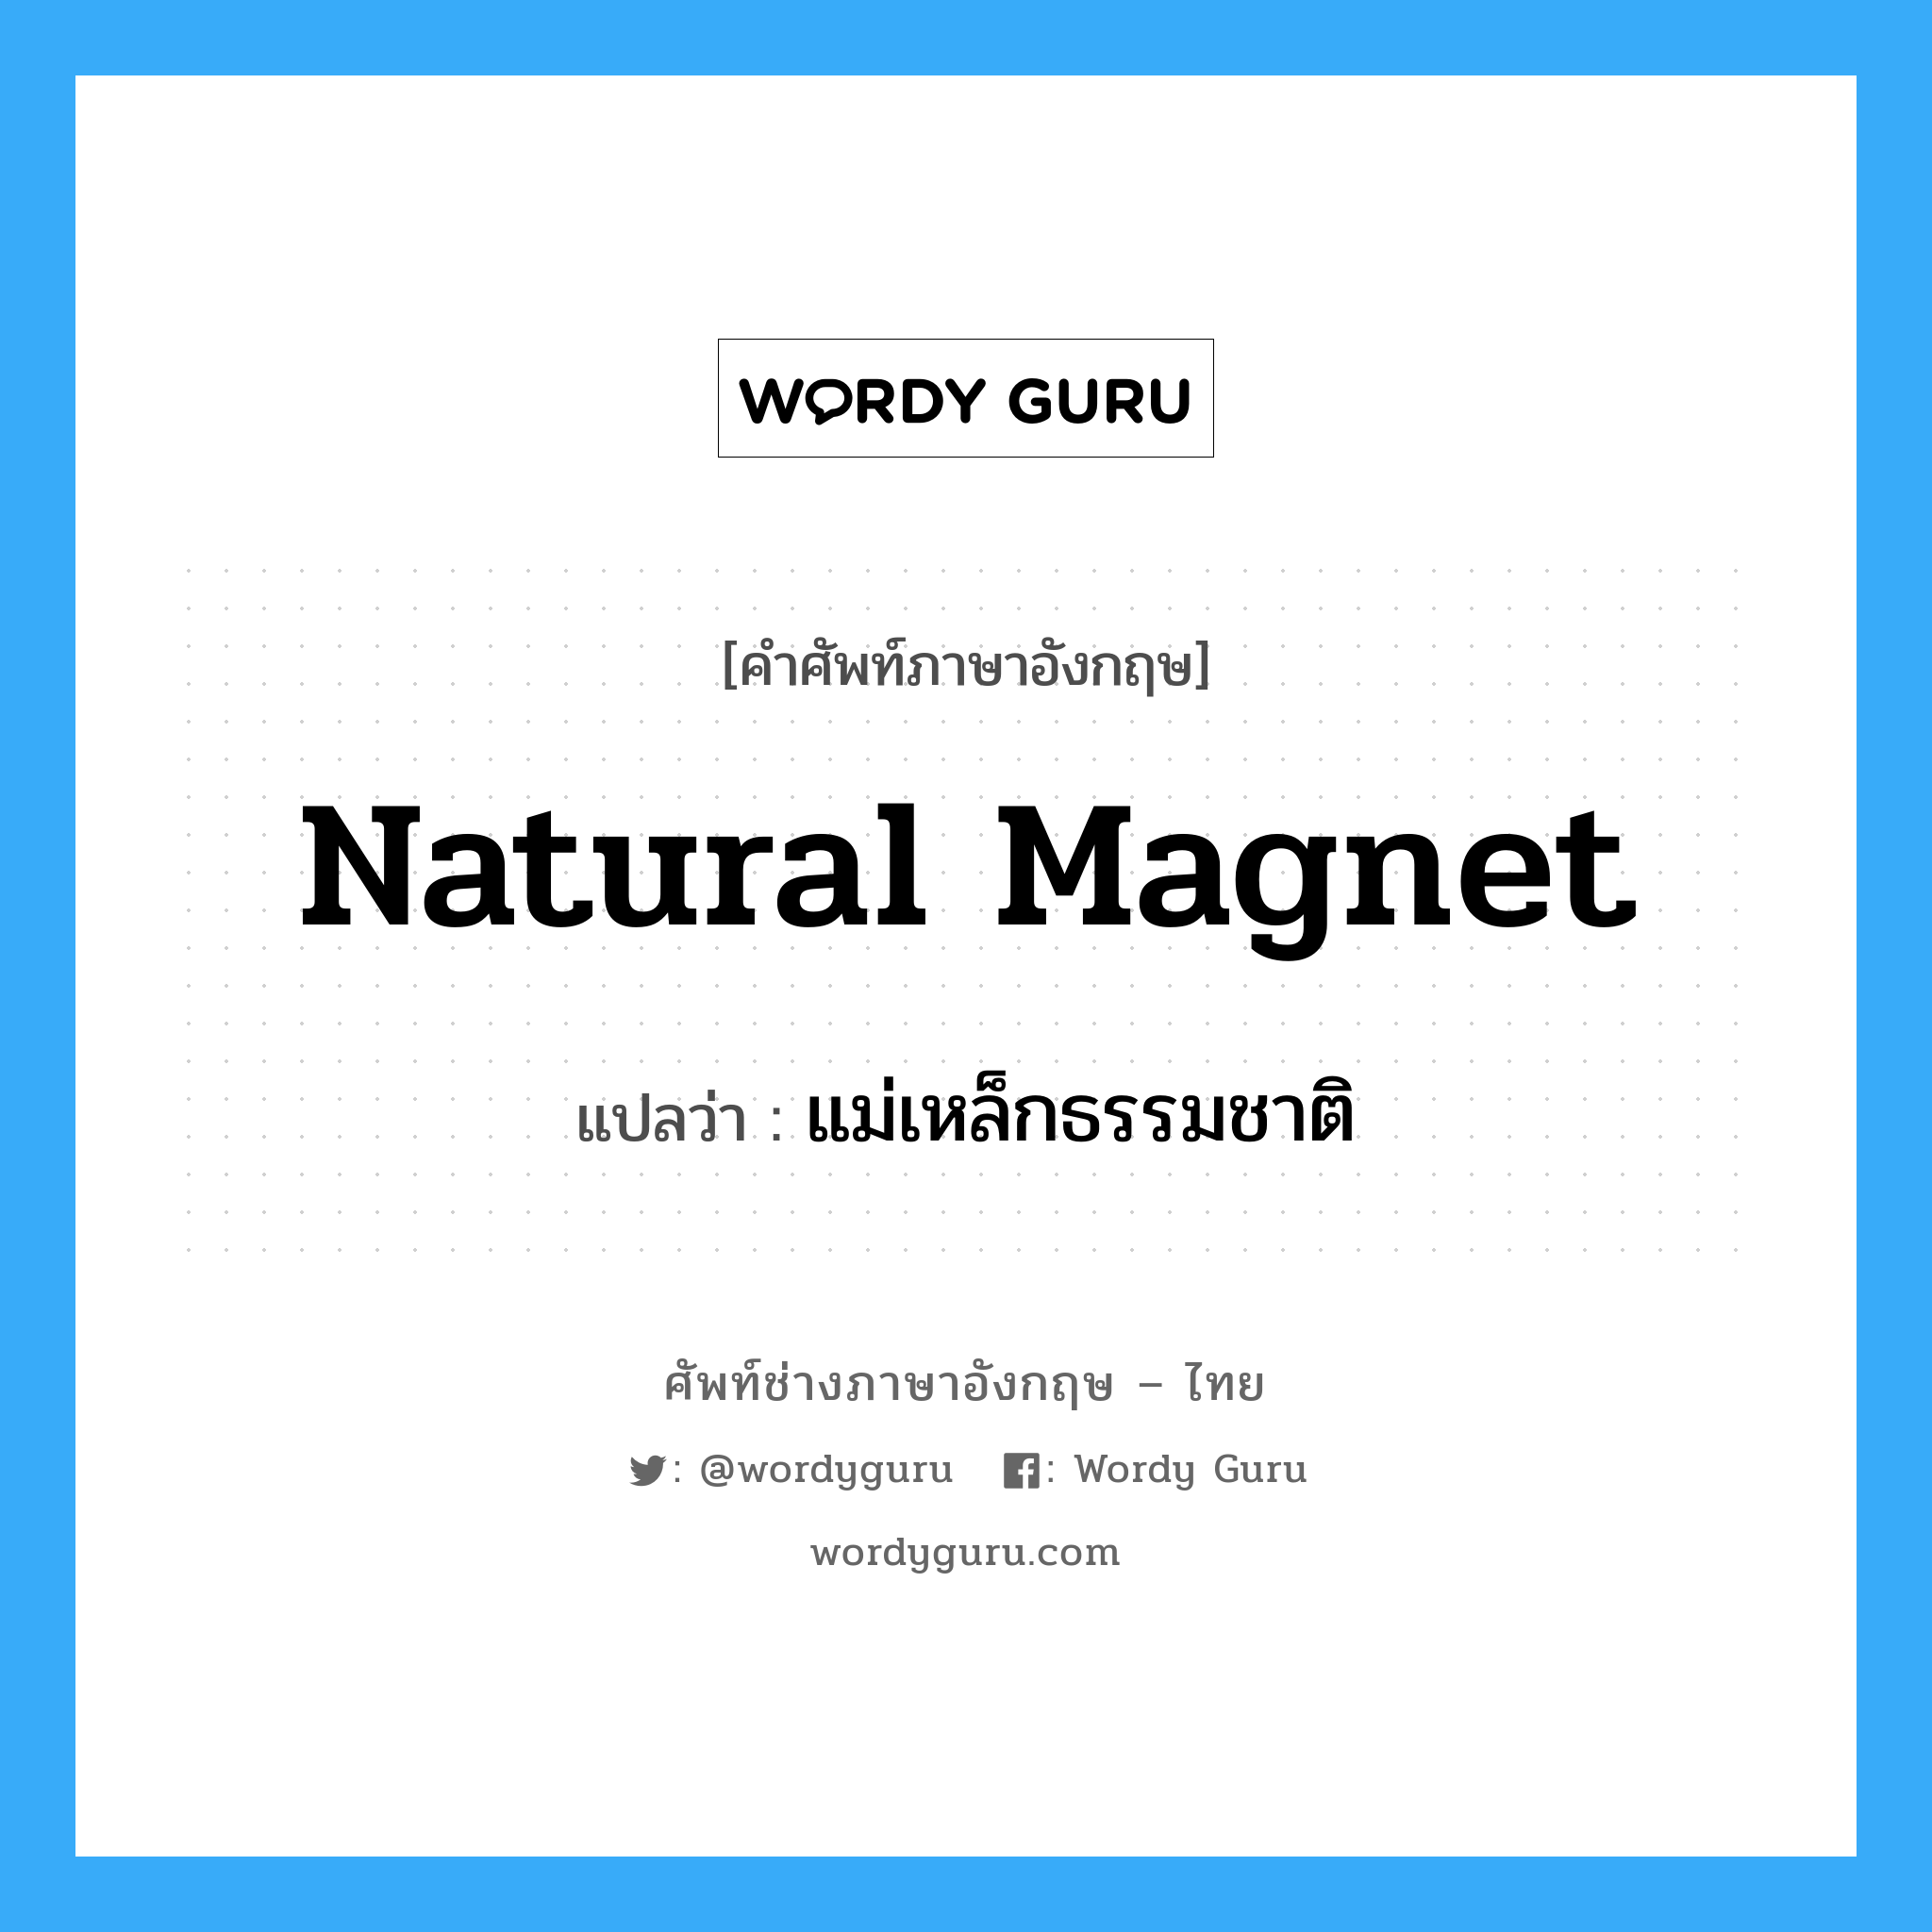 natural magnet แปลว่า?, คำศัพท์ช่างภาษาอังกฤษ - ไทย natural magnet คำศัพท์ภาษาอังกฤษ natural magnet แปลว่า แม่เหล็กธรรมชาติ